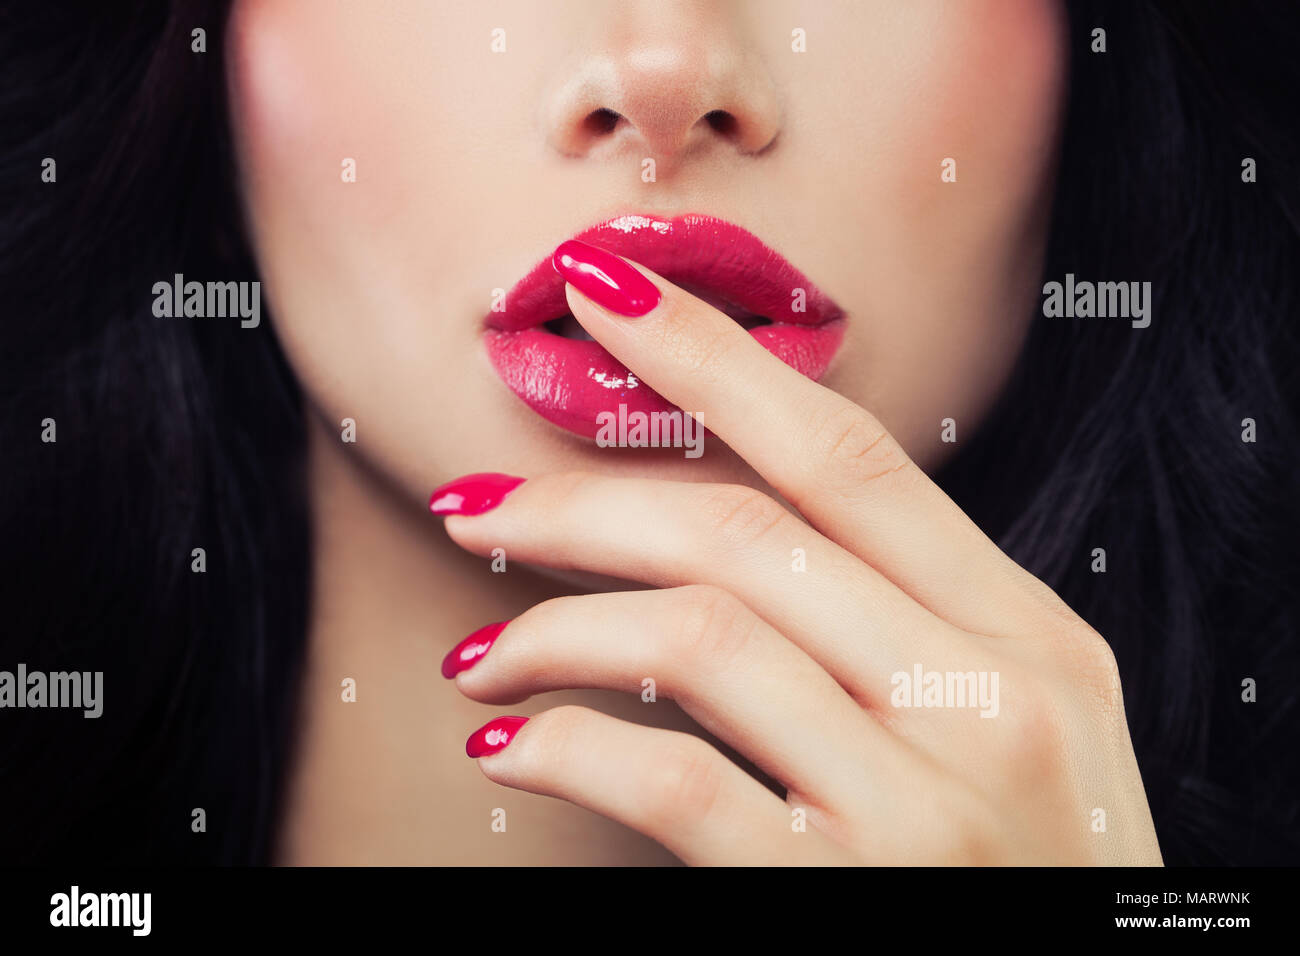 Frau berührte ihre Lippen ihre Hand mit Maniküre. Make-up Lippen mit rosa  Lippenstift, glänzend Stockfotografie - Alamy